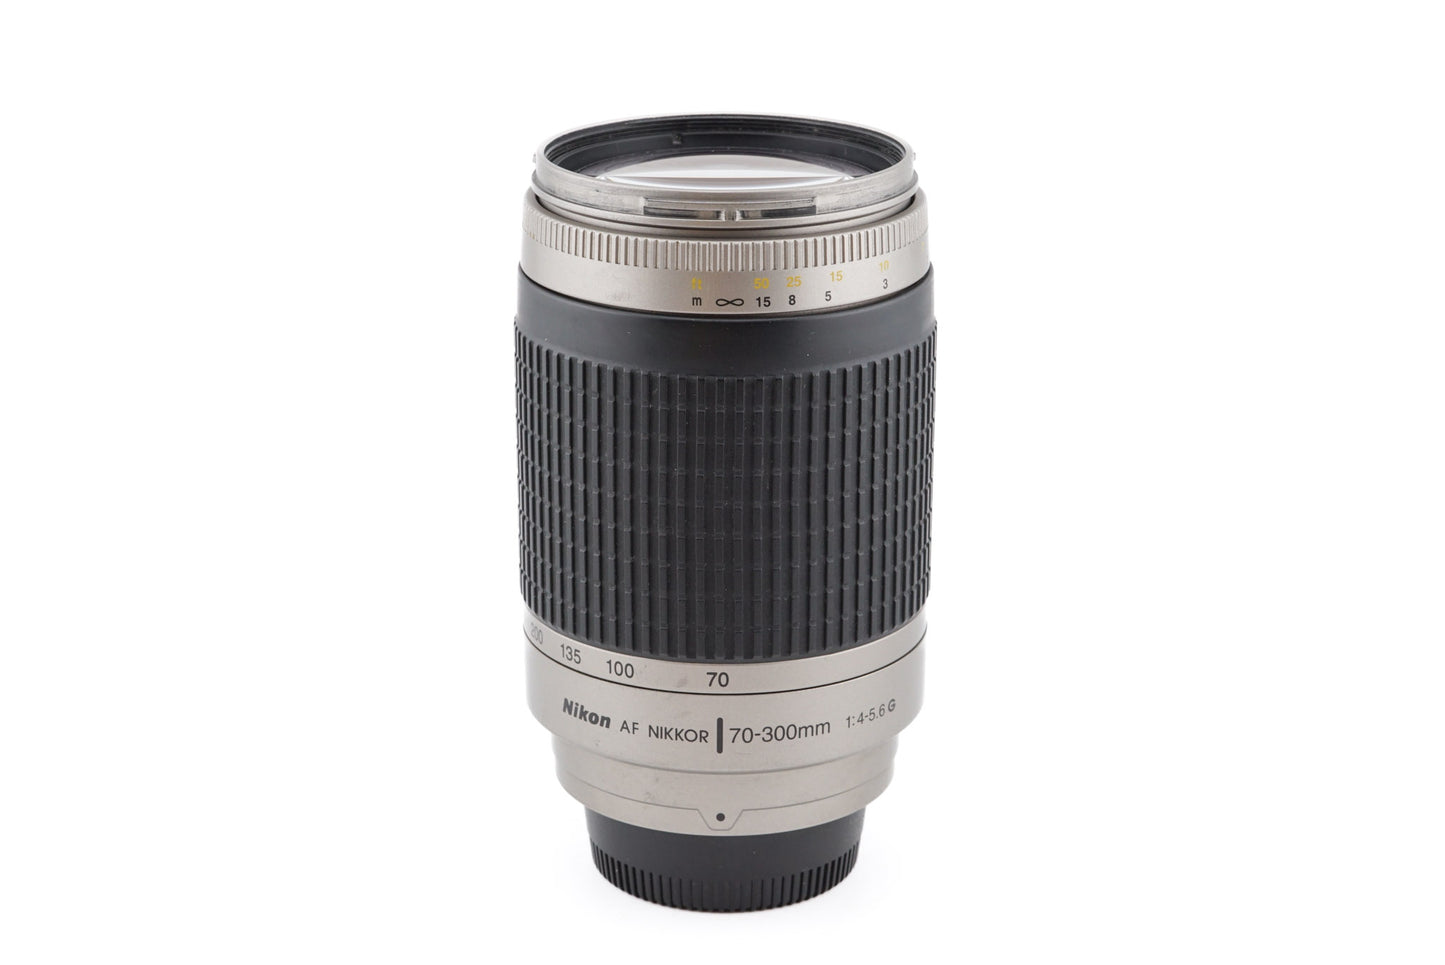 Nikon 70-300mm f4-5.6 G AF Nikkor - Lens